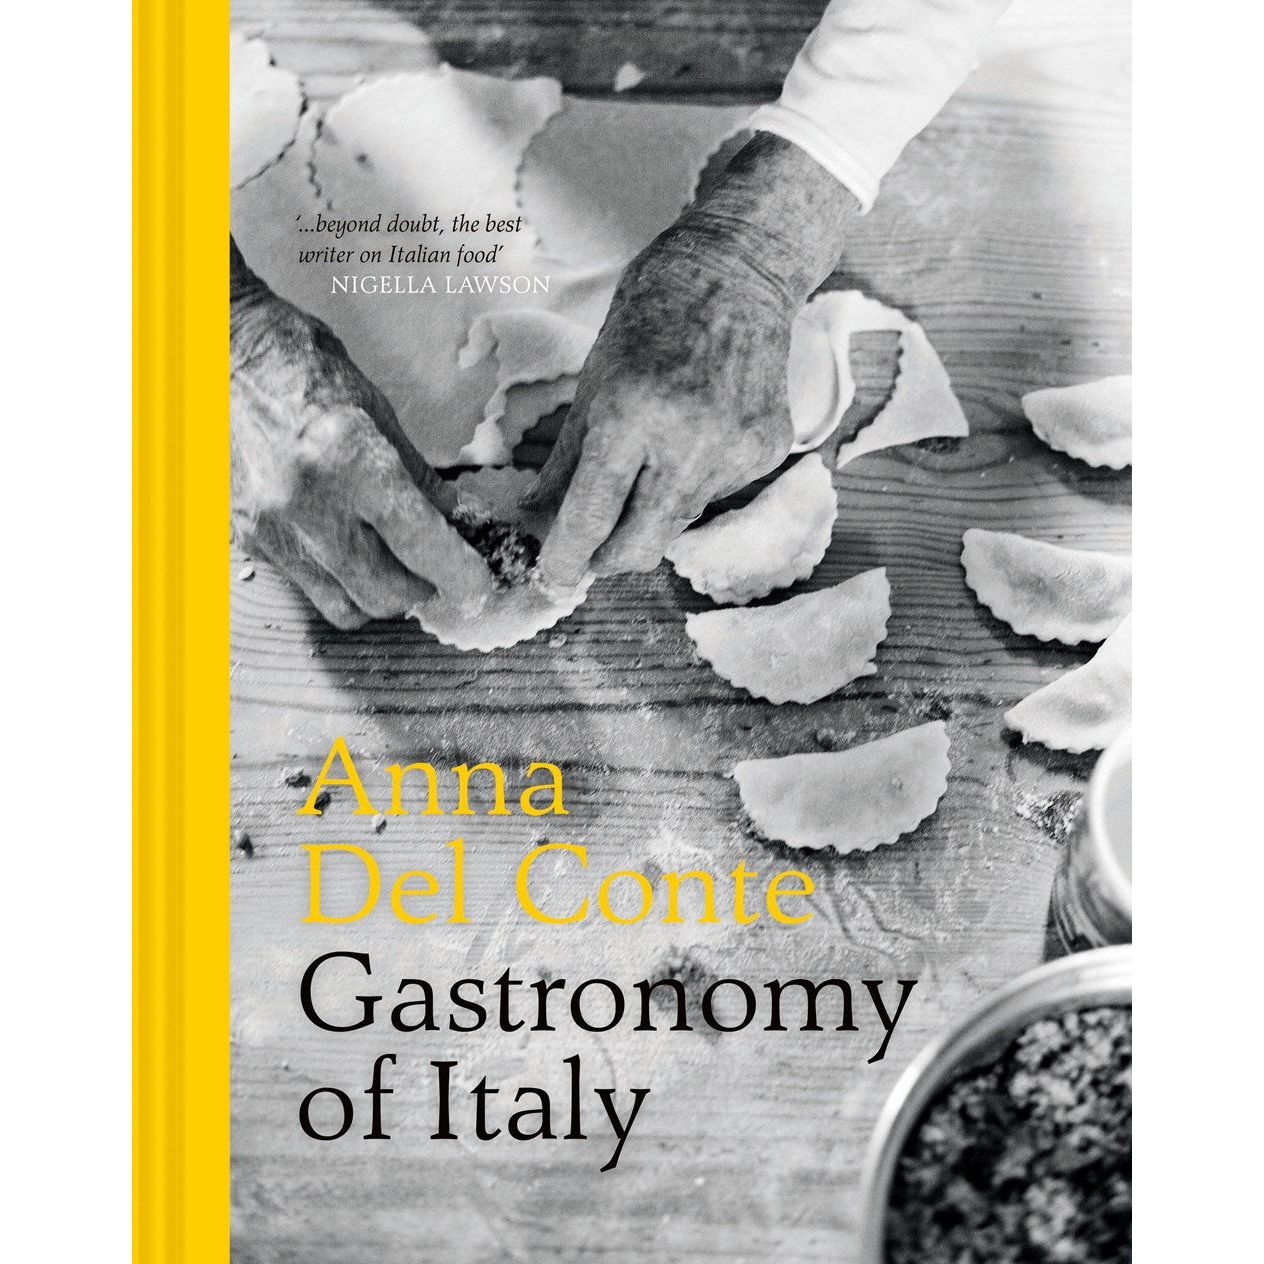 Gastronomy of Italy (Anna Del Conte)